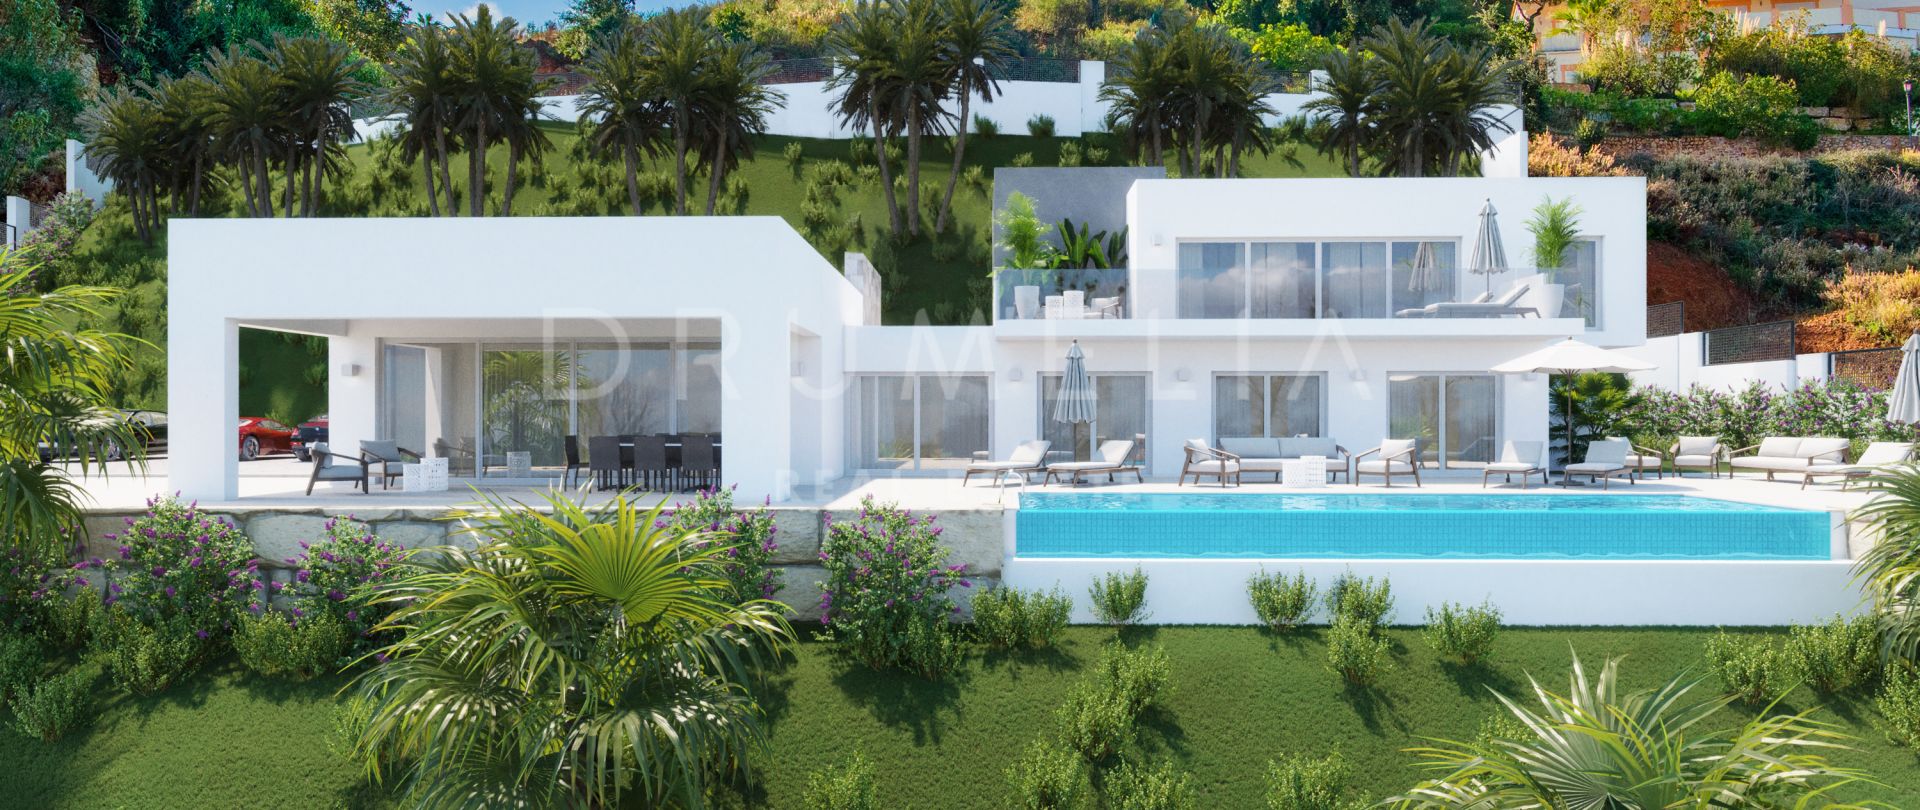 Brandneue moderne Luxusvilla mit atemberaubender Aussicht in La Mairena, Marbella Ost